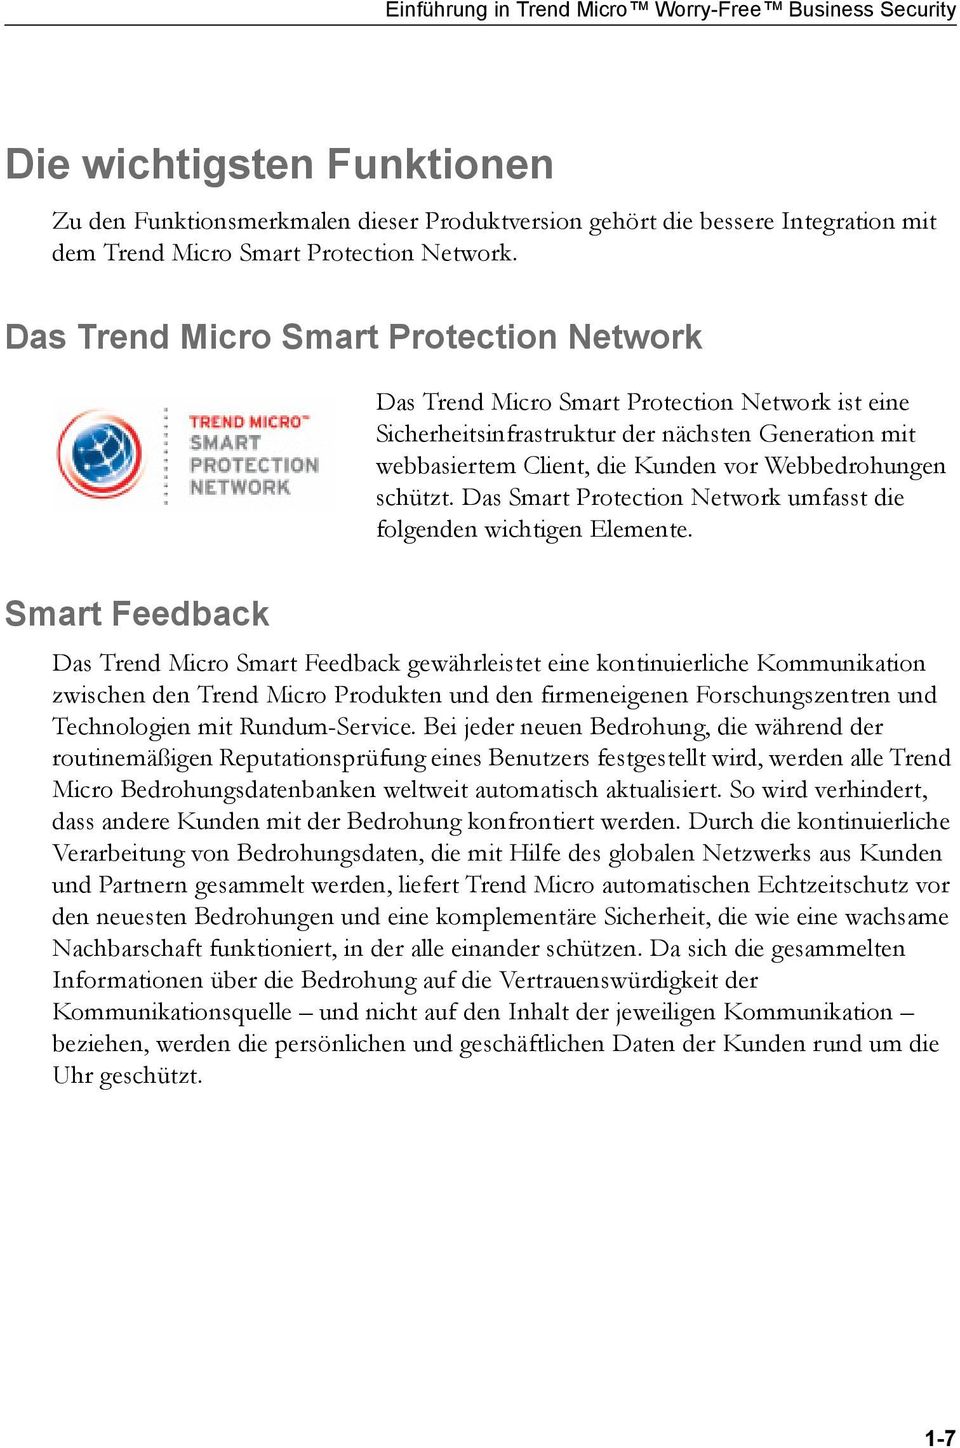 Das Trend Micro Smart Protection Network Das Trend Micro Smart Protection Network ist eine Sicherheitsinfrastruktur der nächsten Generation mit webbasiertem Client, die Kunden vor Webbedrohungen